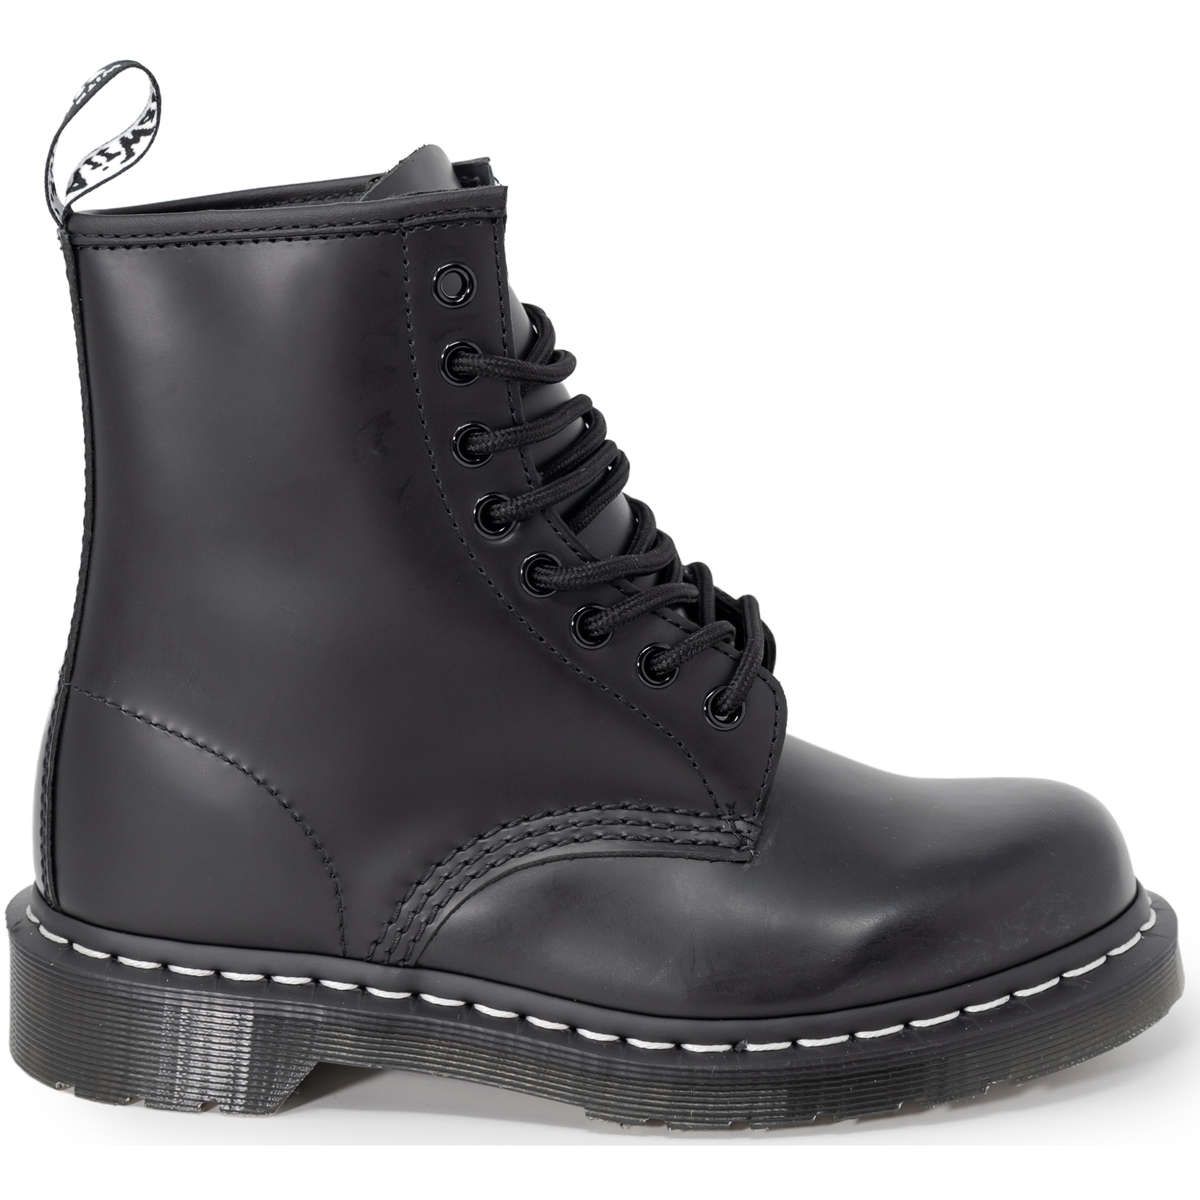 Schuhe Damen Boots Dr. Martens 1460 WS BLACK SMOOTH UNISEX 24758001 Schwarz